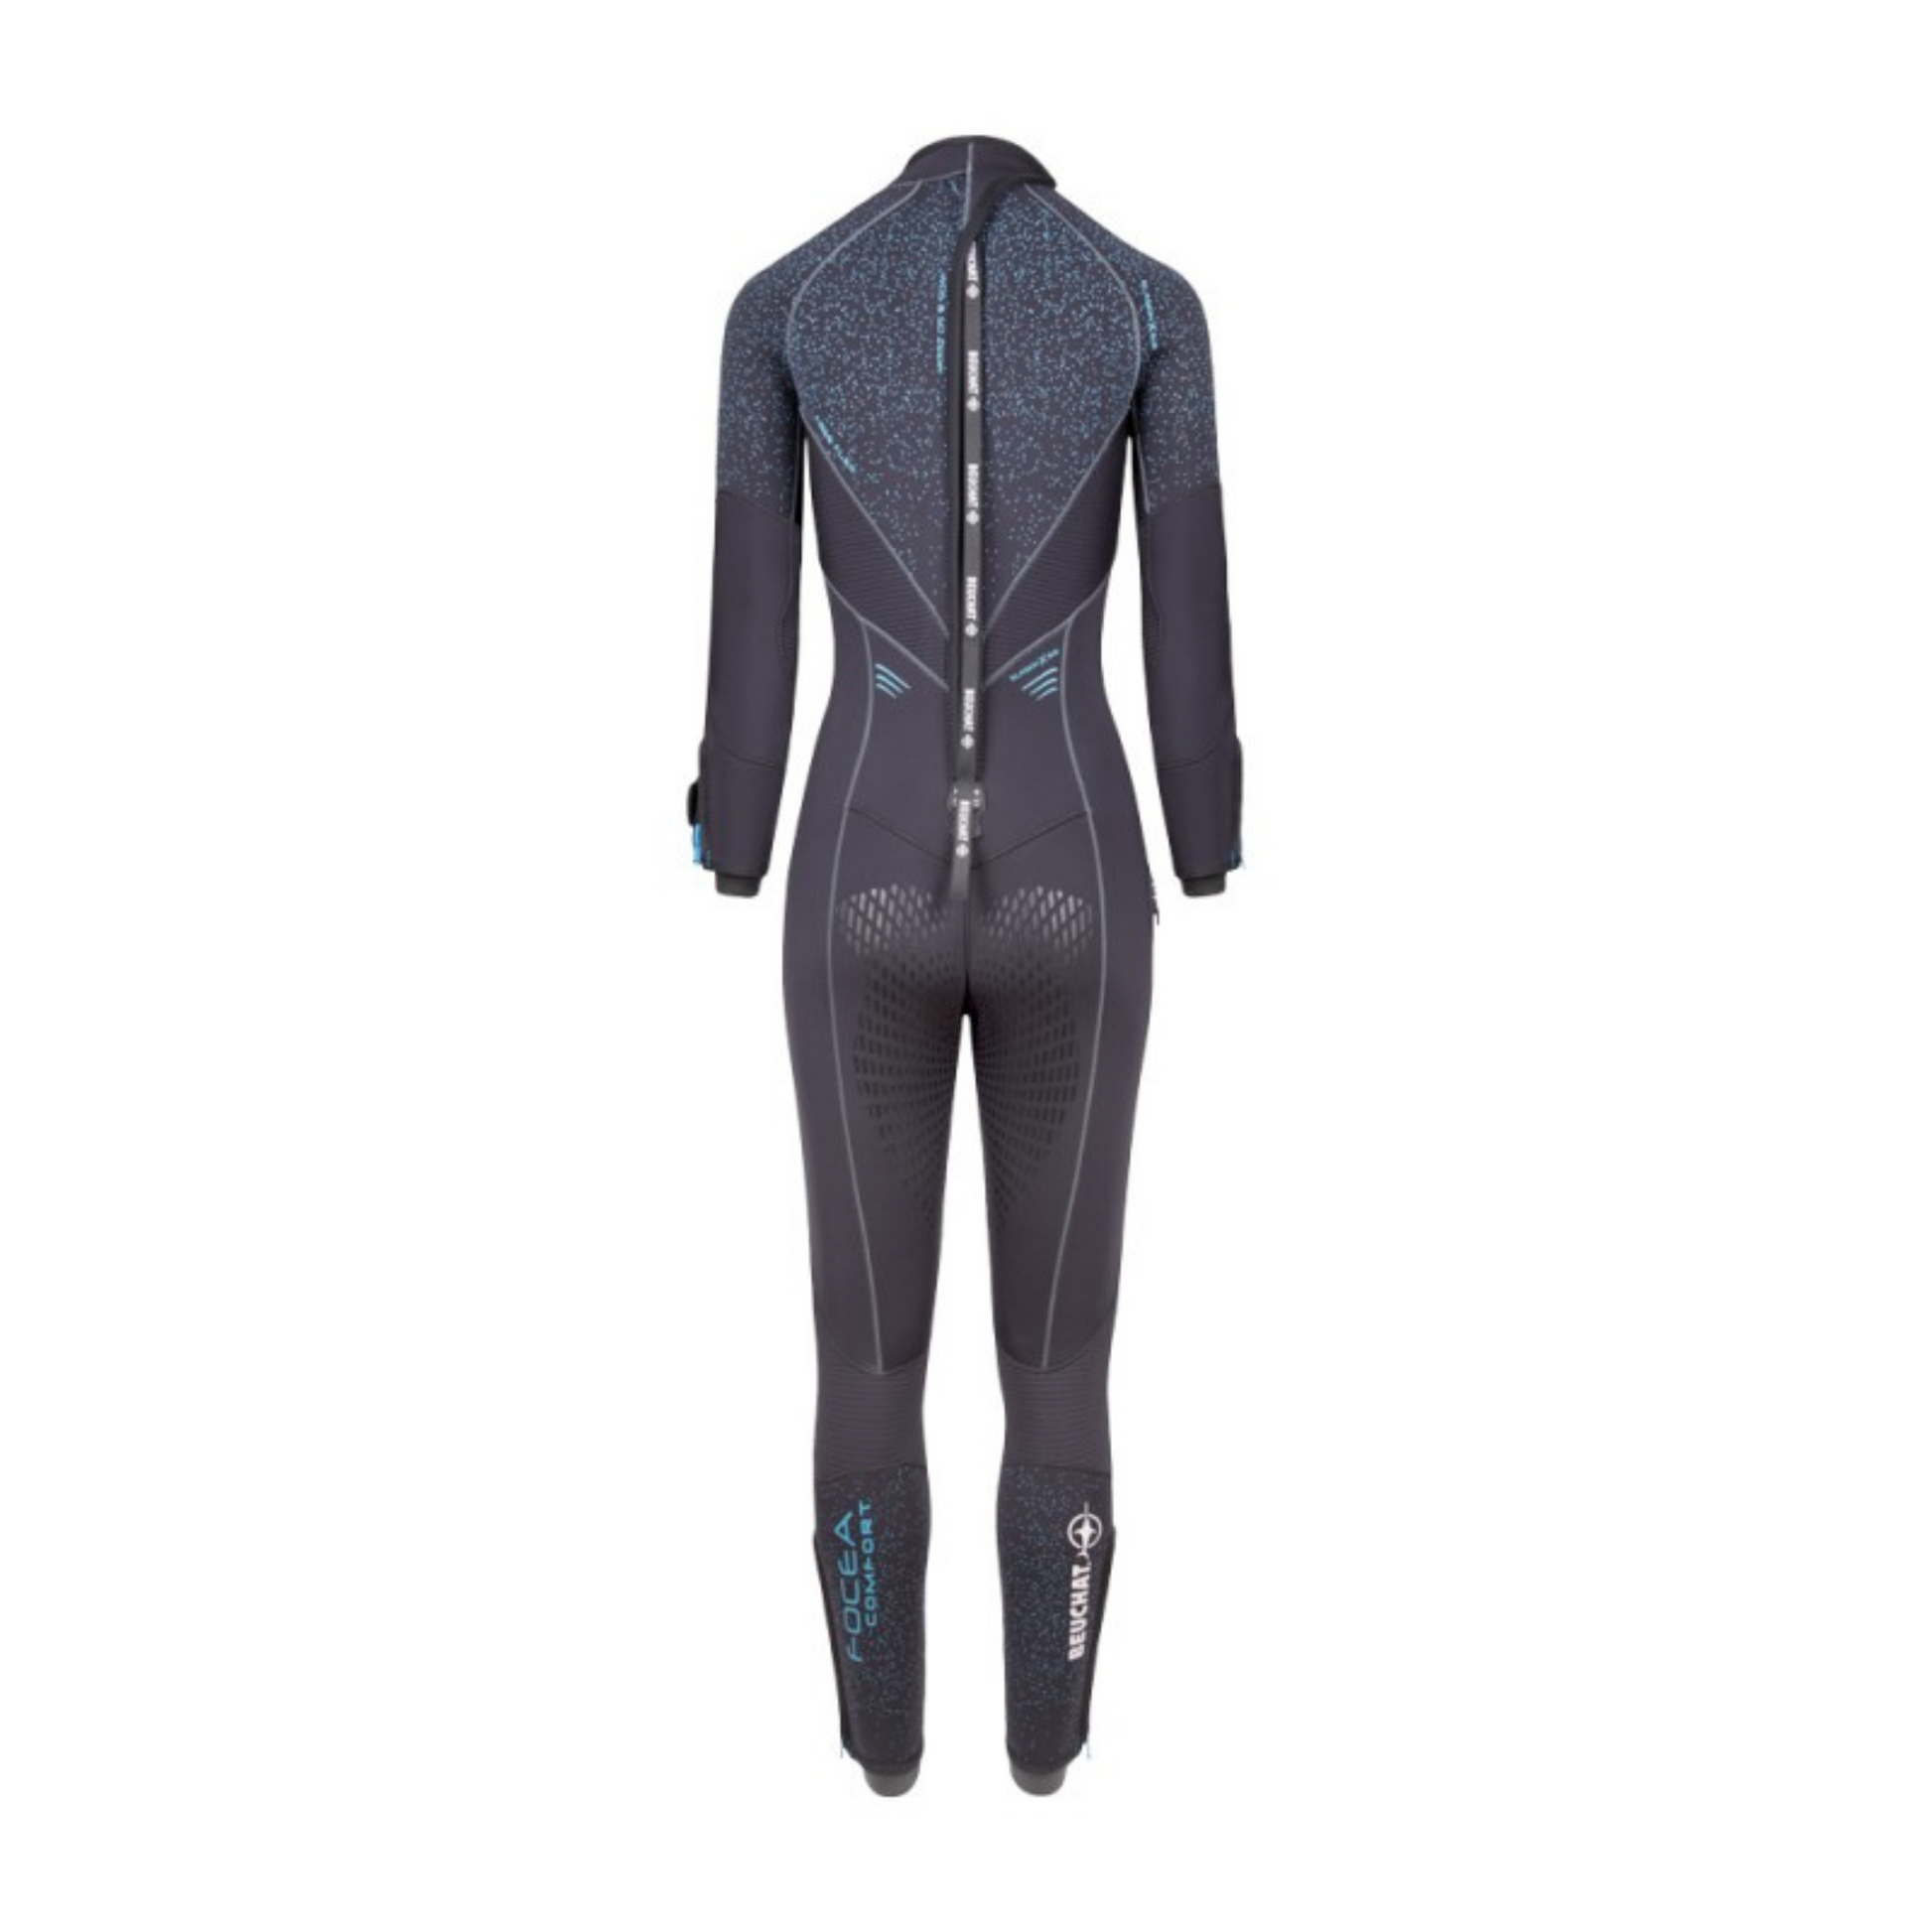 Beuchat Focea Comfort 5mm Ladies' Wetsuit